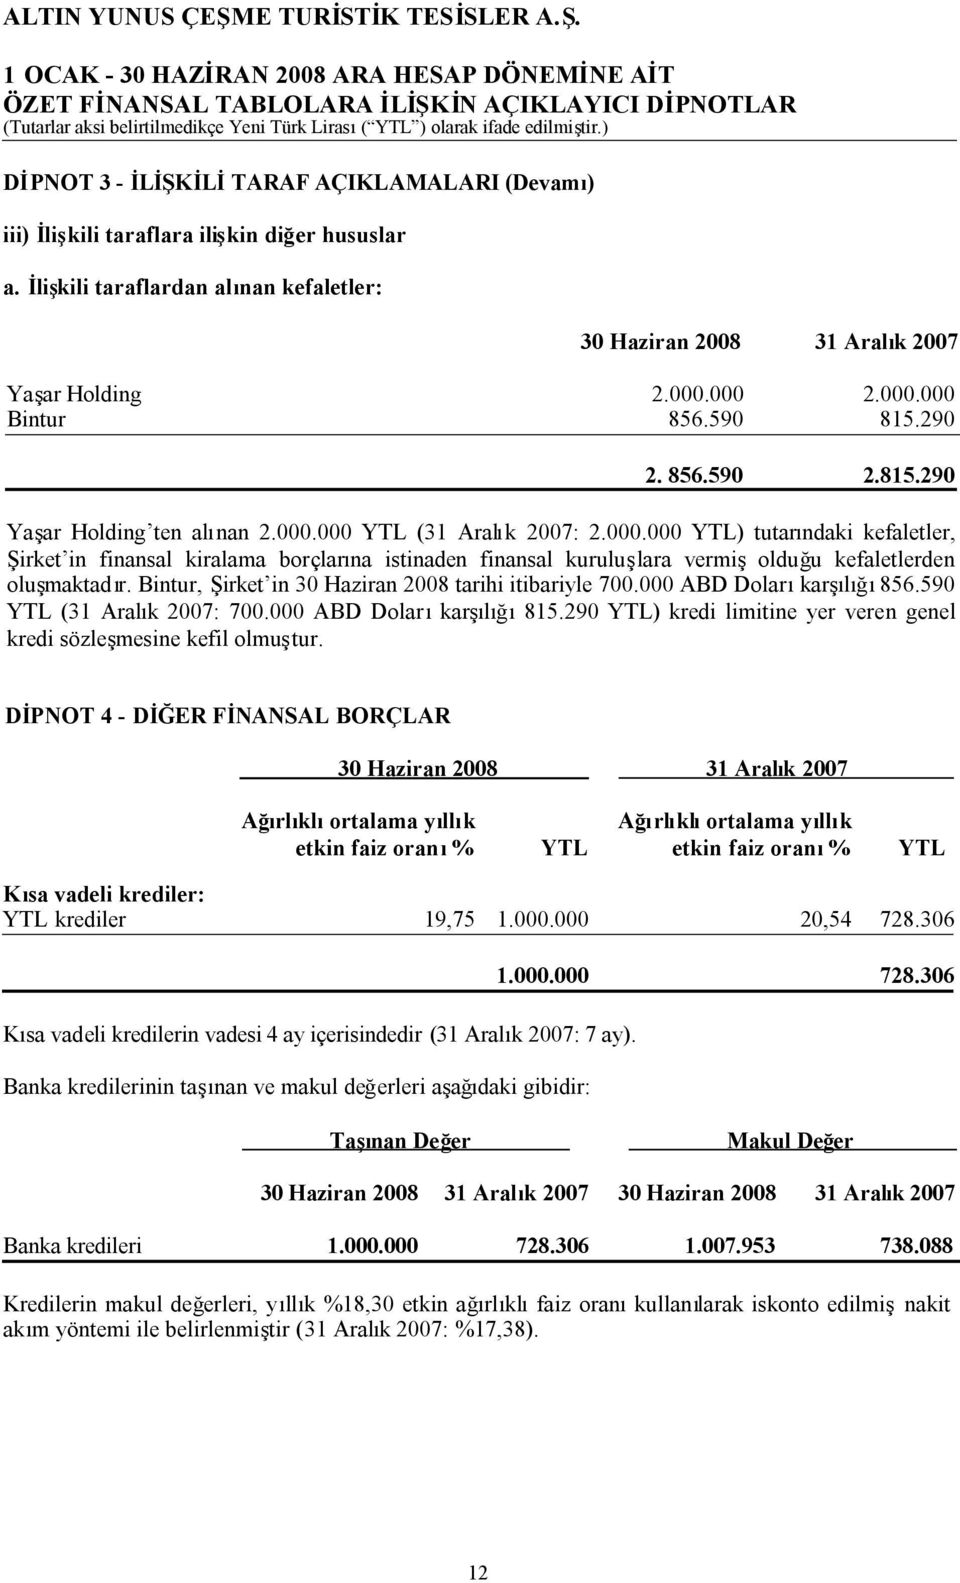 Bintur, Şirket in 30 Haziran 2008 tarihi itibariyle 700.000 ABD Dolarıkarşılığı856.590 YTL (31 Aralık 2007: 700.000 ABD Dolarıkarşılığı815.